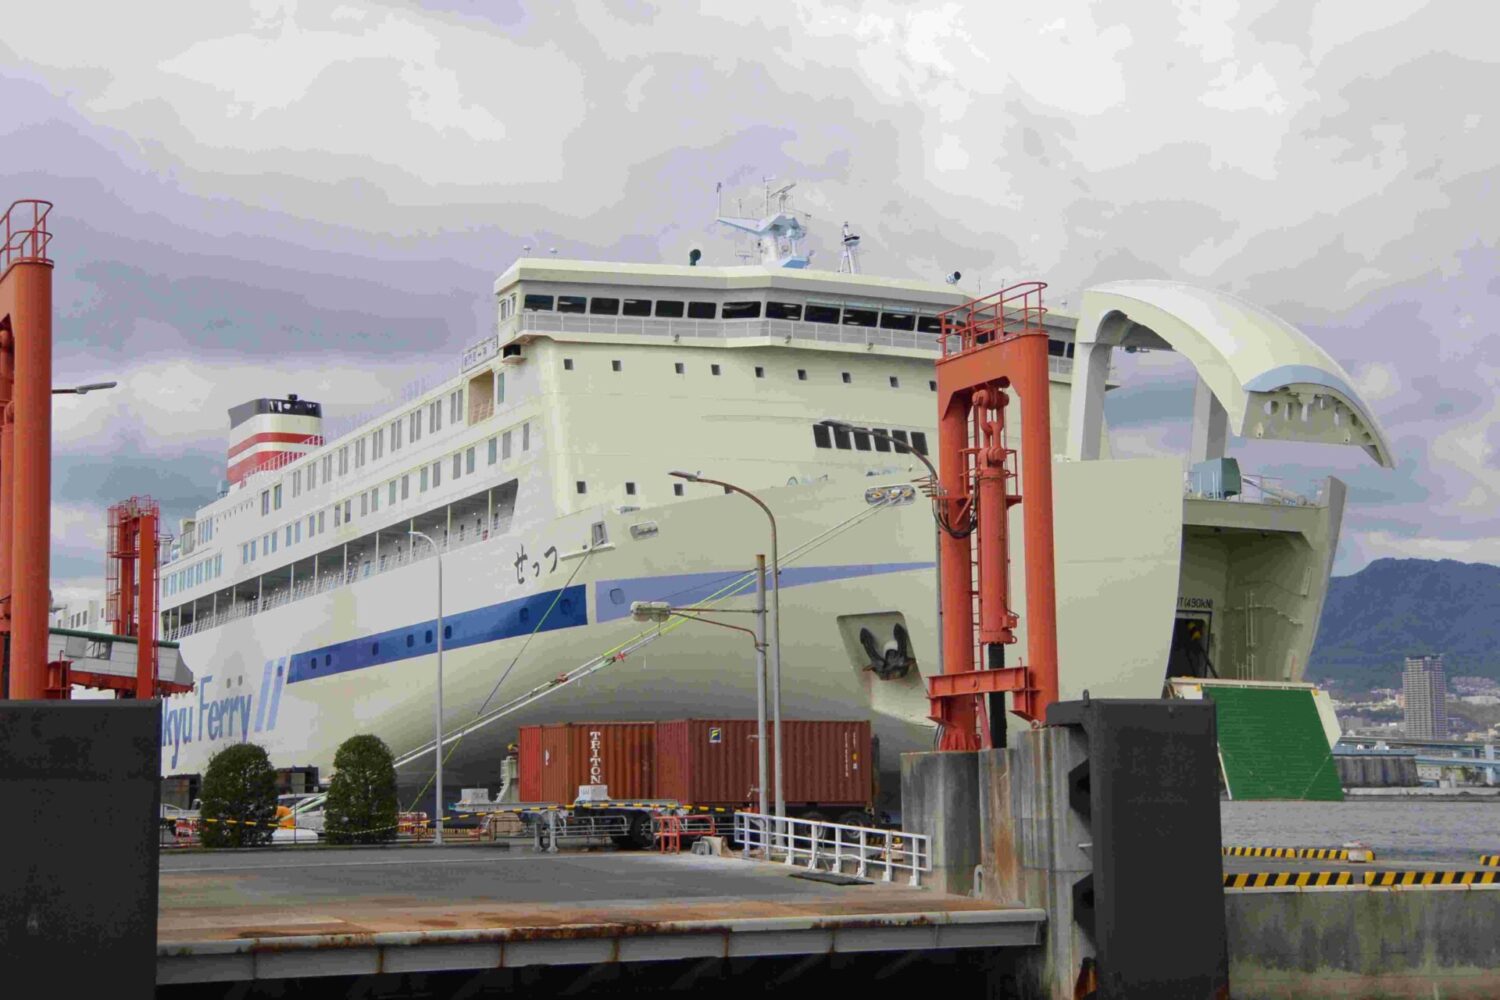 阪九フェリー「せっつ」、神戸航路に24年ぶり新船